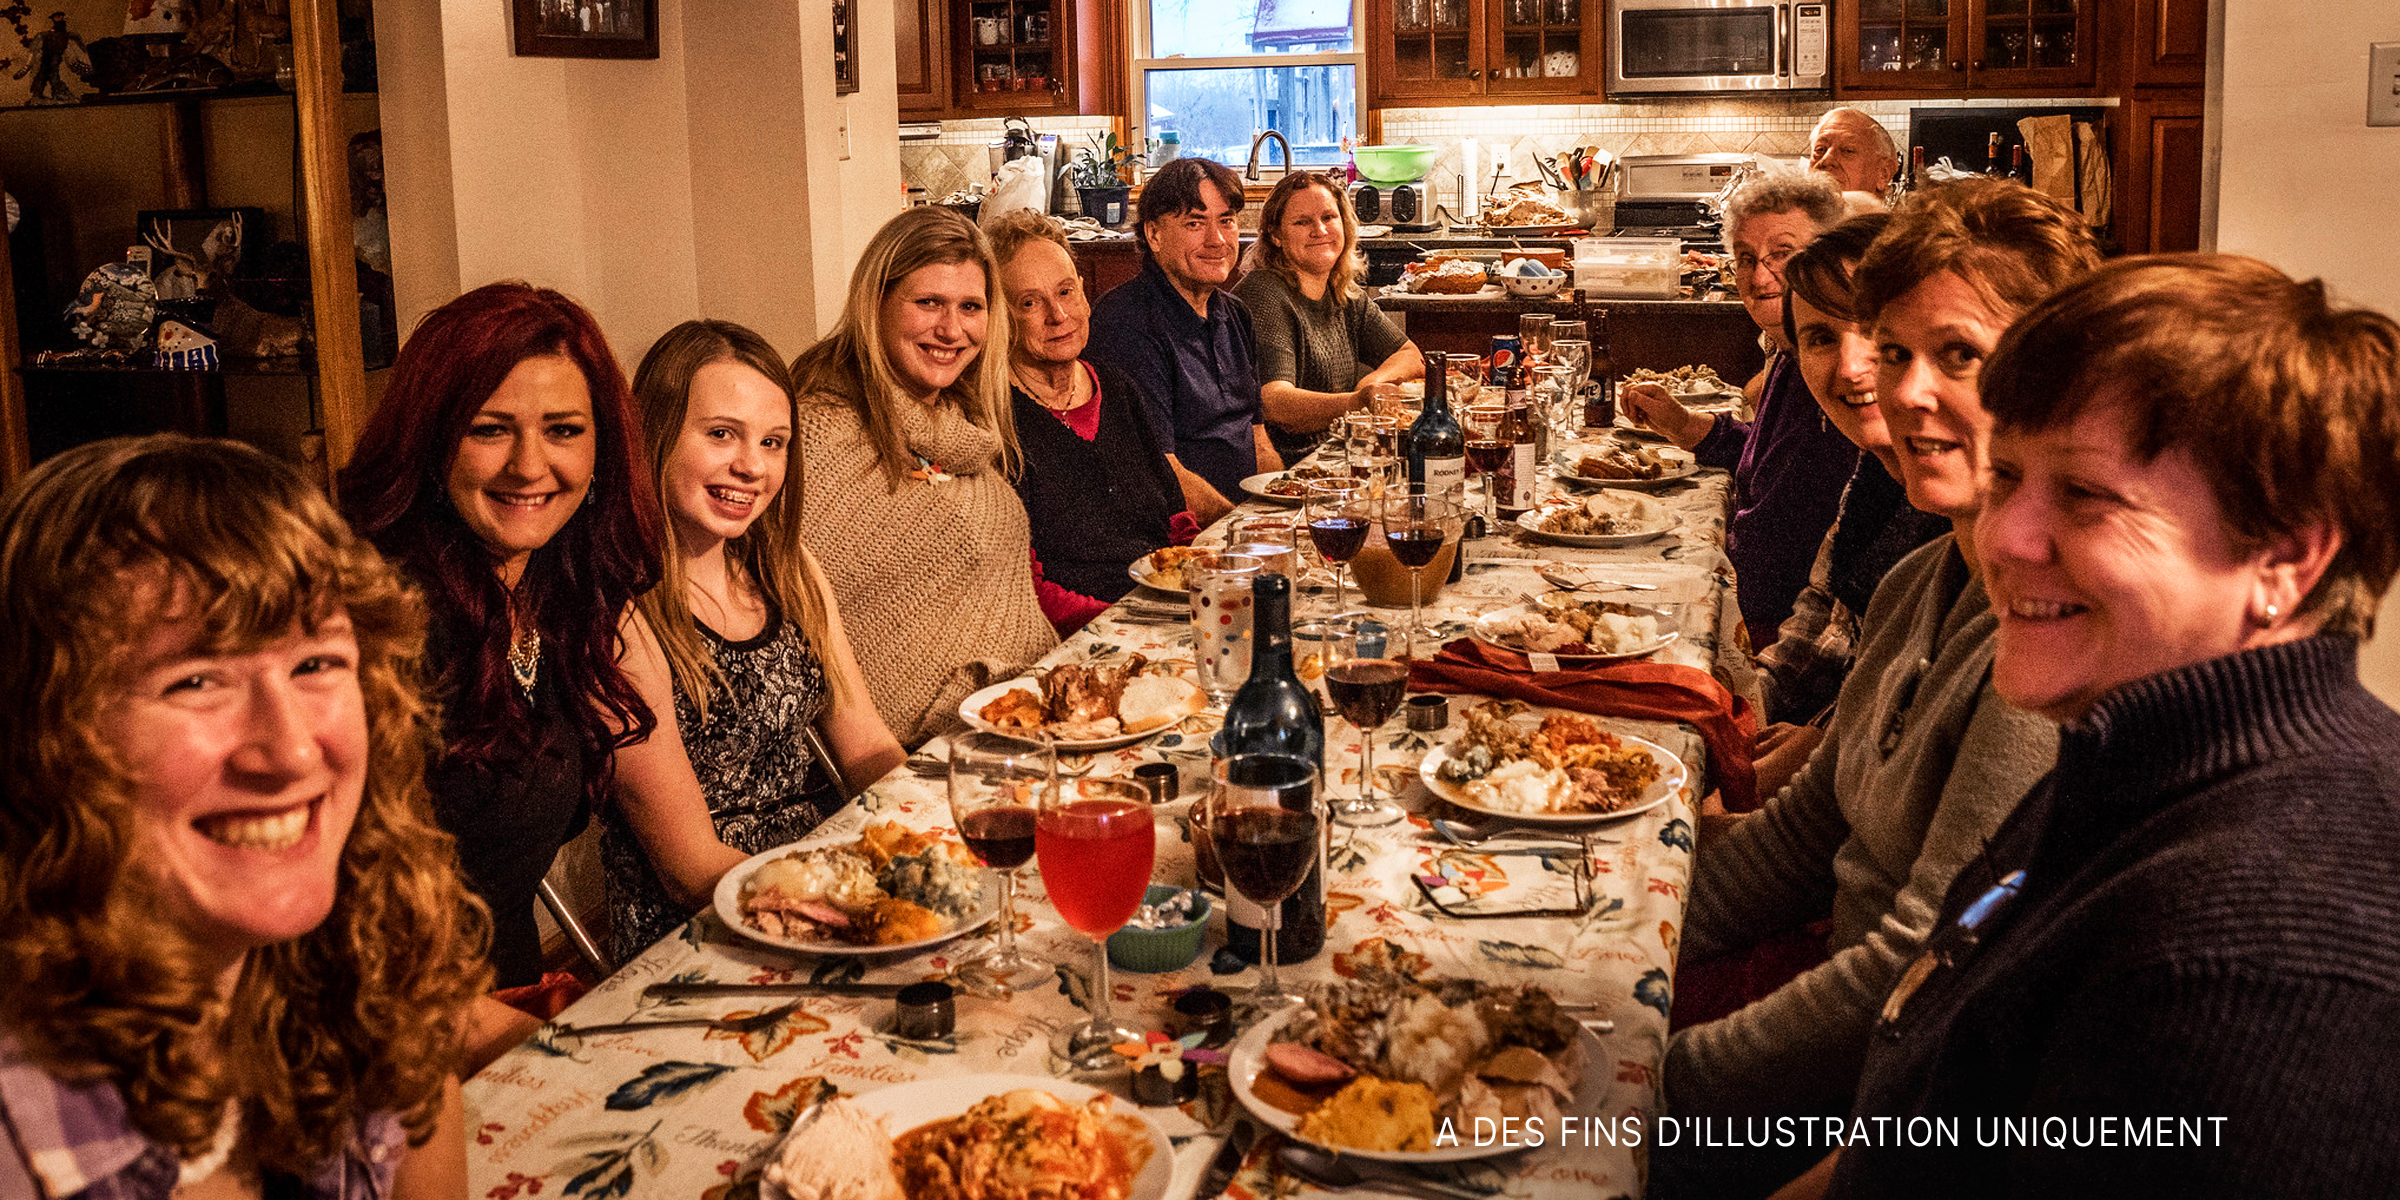 Membres de la famille réunis pour le dîner de Thanksgiving | Source : flickr.com/s_mestdagh/CC BY-SA 2.0